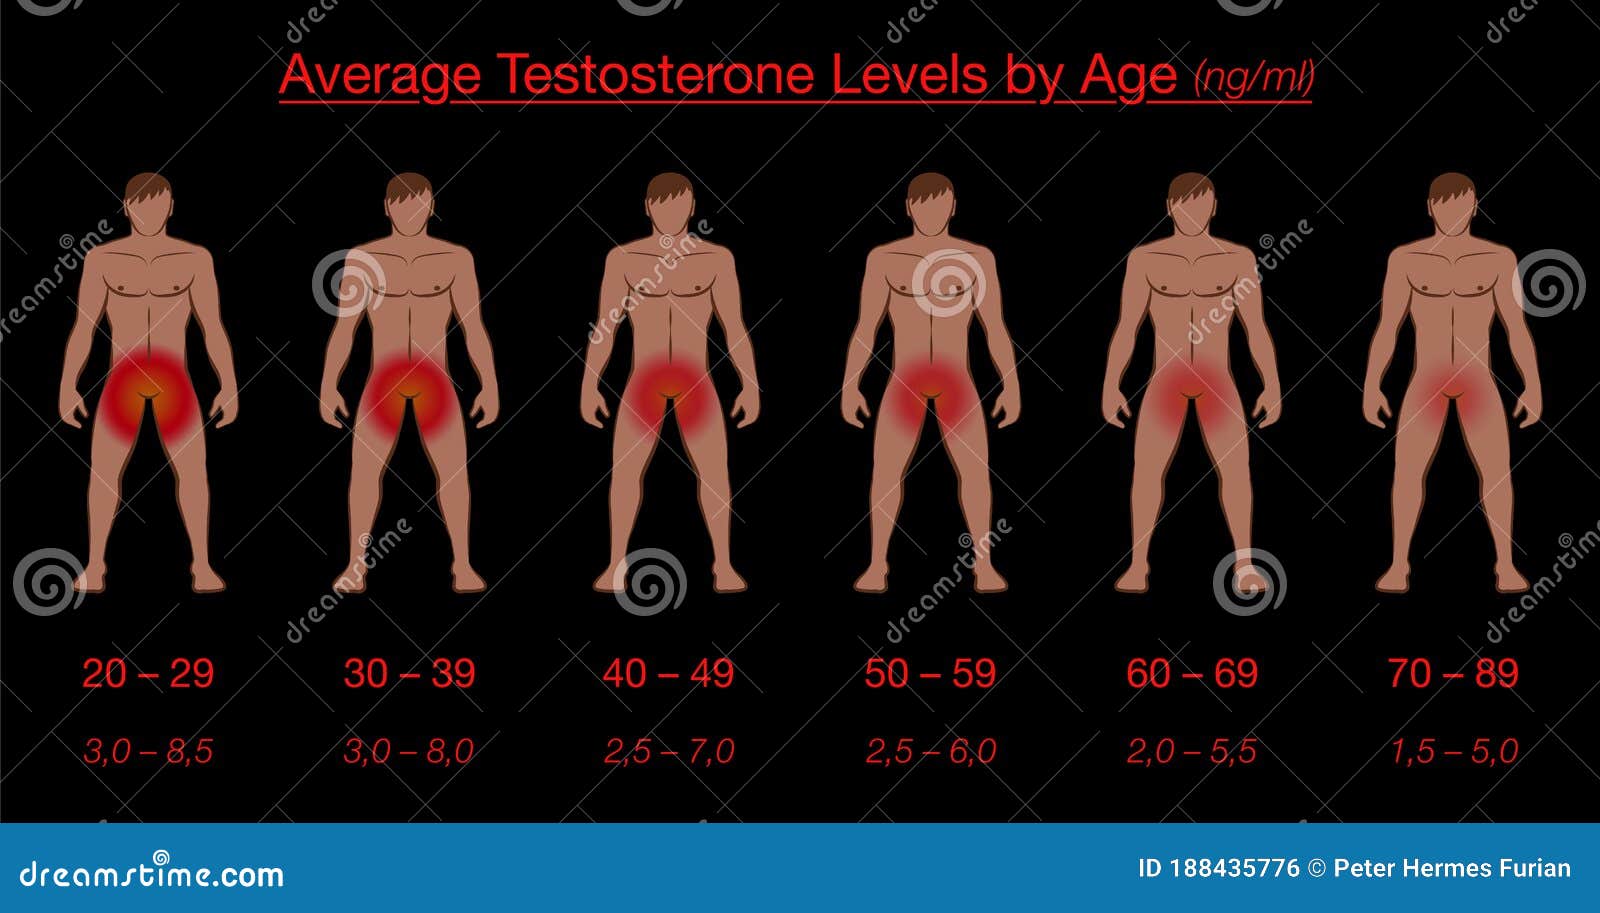 влияет ли тестостерон на размер члена фото 4